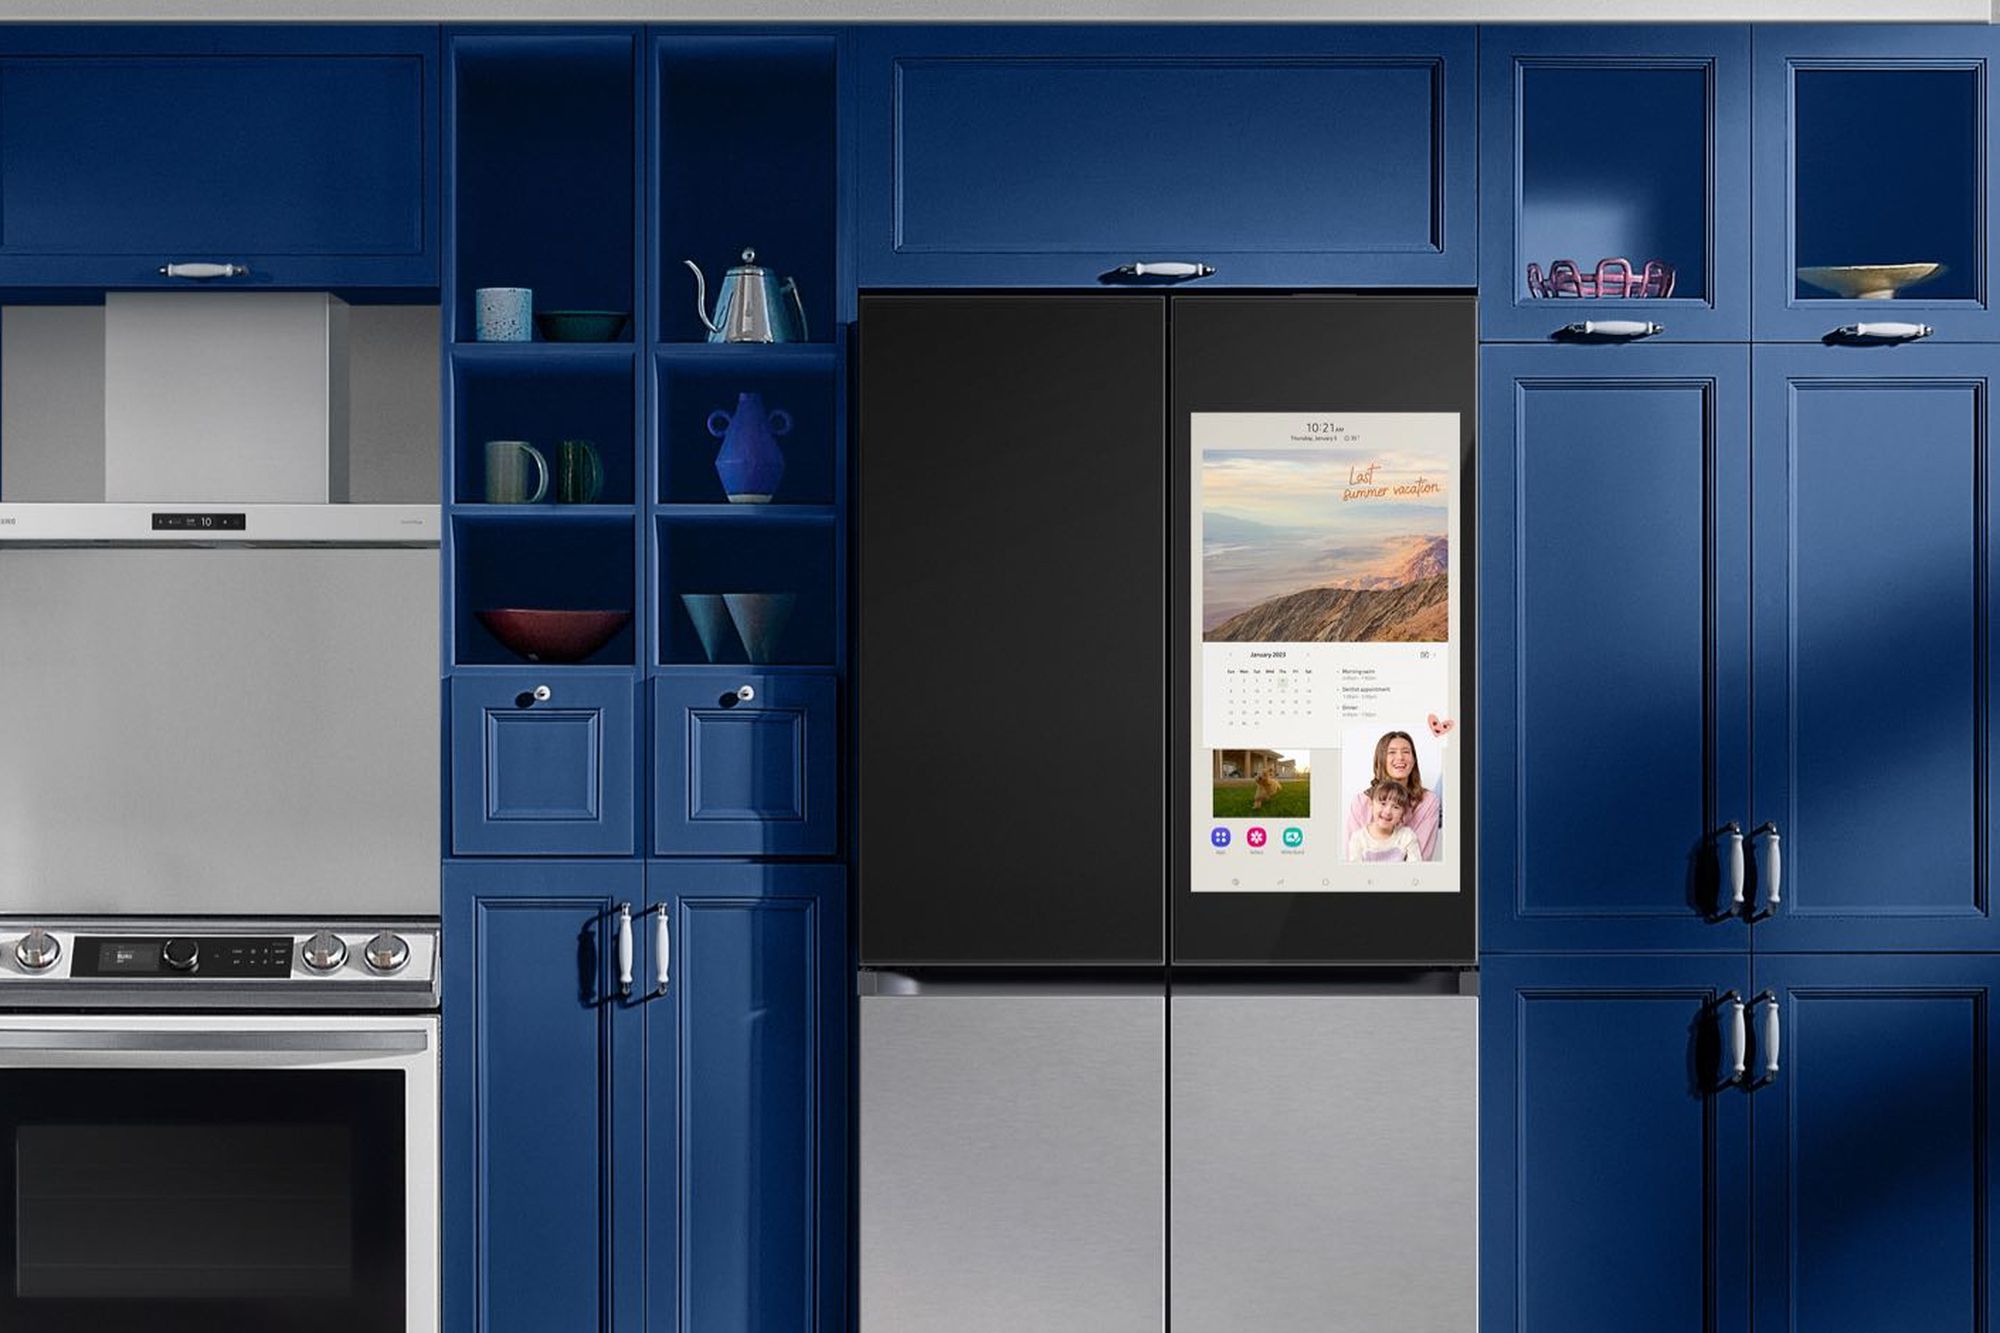 Để cử Thiết bị gia đình có thiết kế Đổi mới sáng tạo: Samsung, LG tranh giành số vote, tủ lạnh Bespoke dẫn đầu với lợi thế này - Ảnh 5.